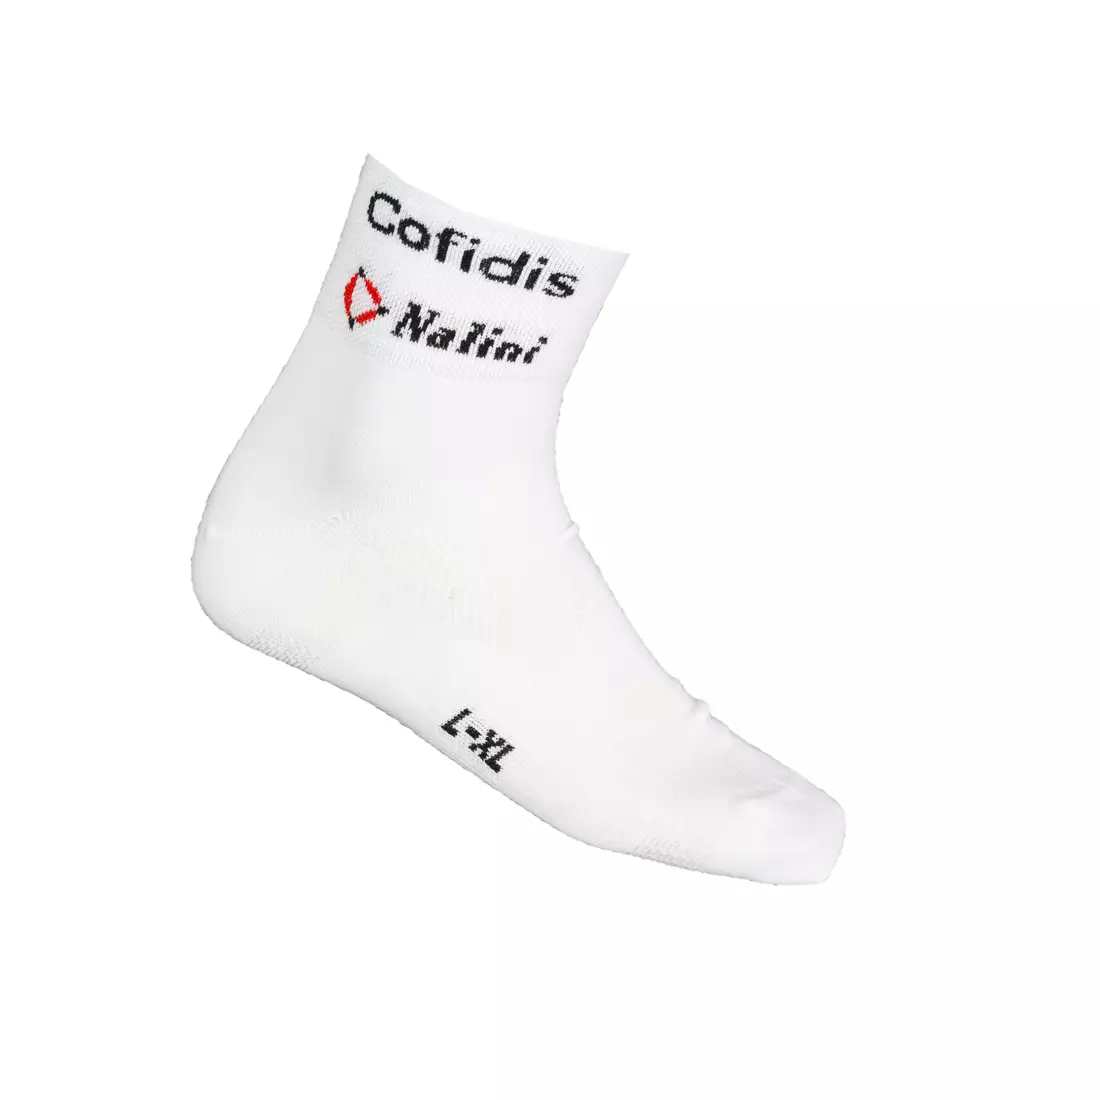 COFIDIS 2015 cycling socks